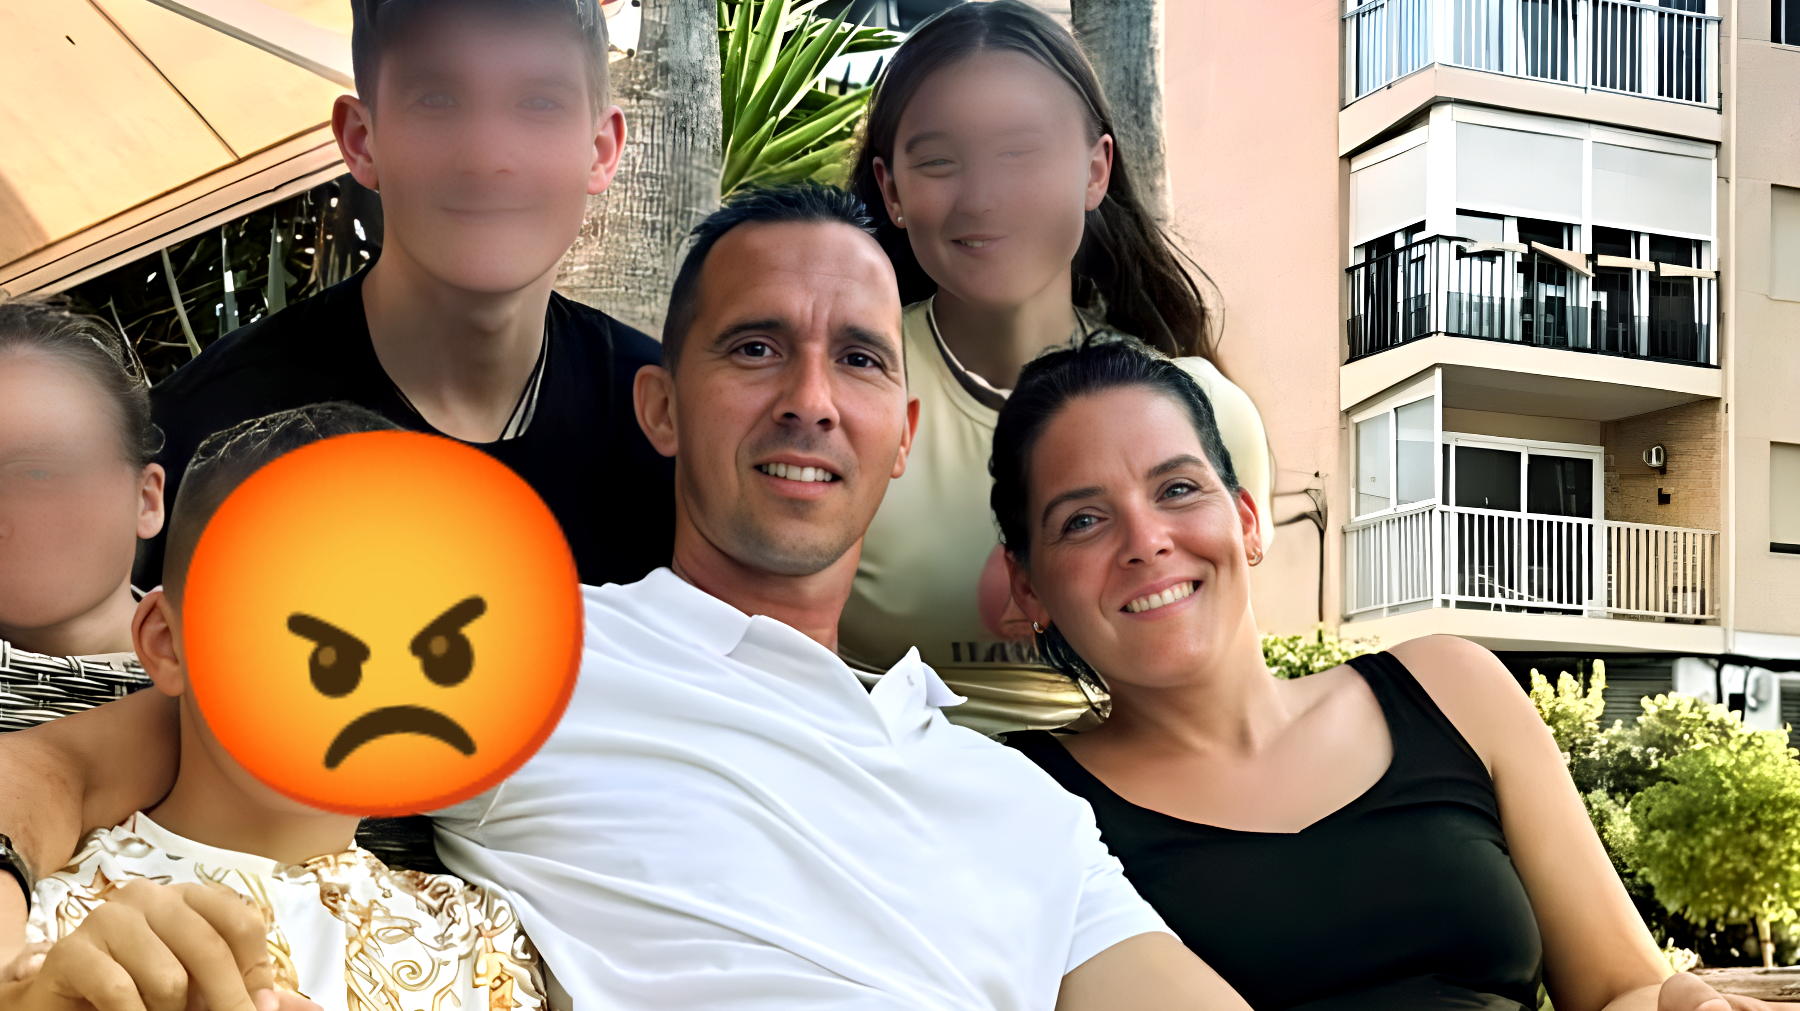 Truffa in vacanza: famiglia italiana perde più di 3mila euro in Spagna. La villa prenotata non esiste!